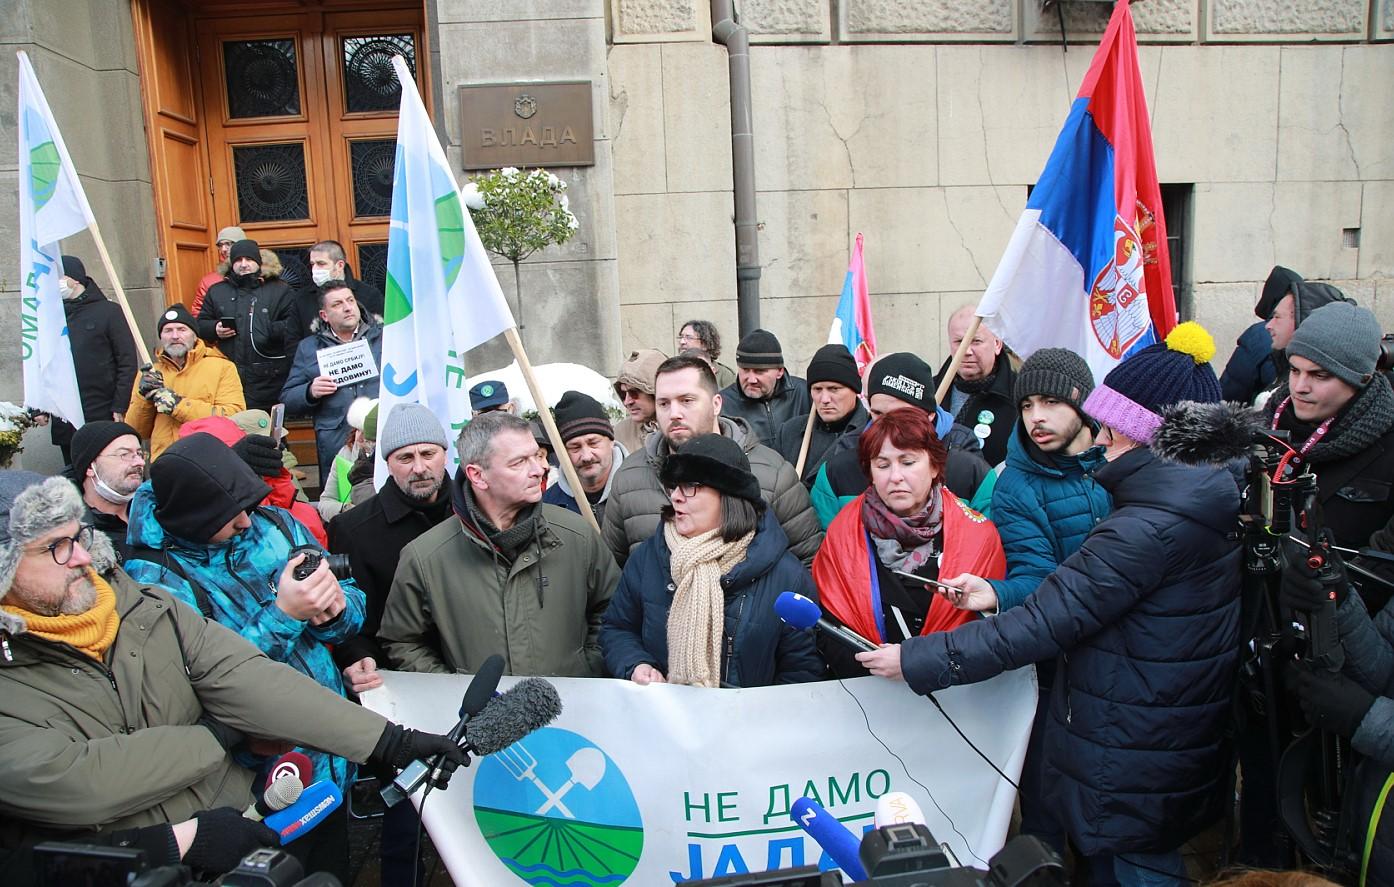 Ispred Vlade Srbije održani protesti: Zatraženo ukidanje realizacije projekta eksploatacije i prerade minerala jadarit "Jadar"